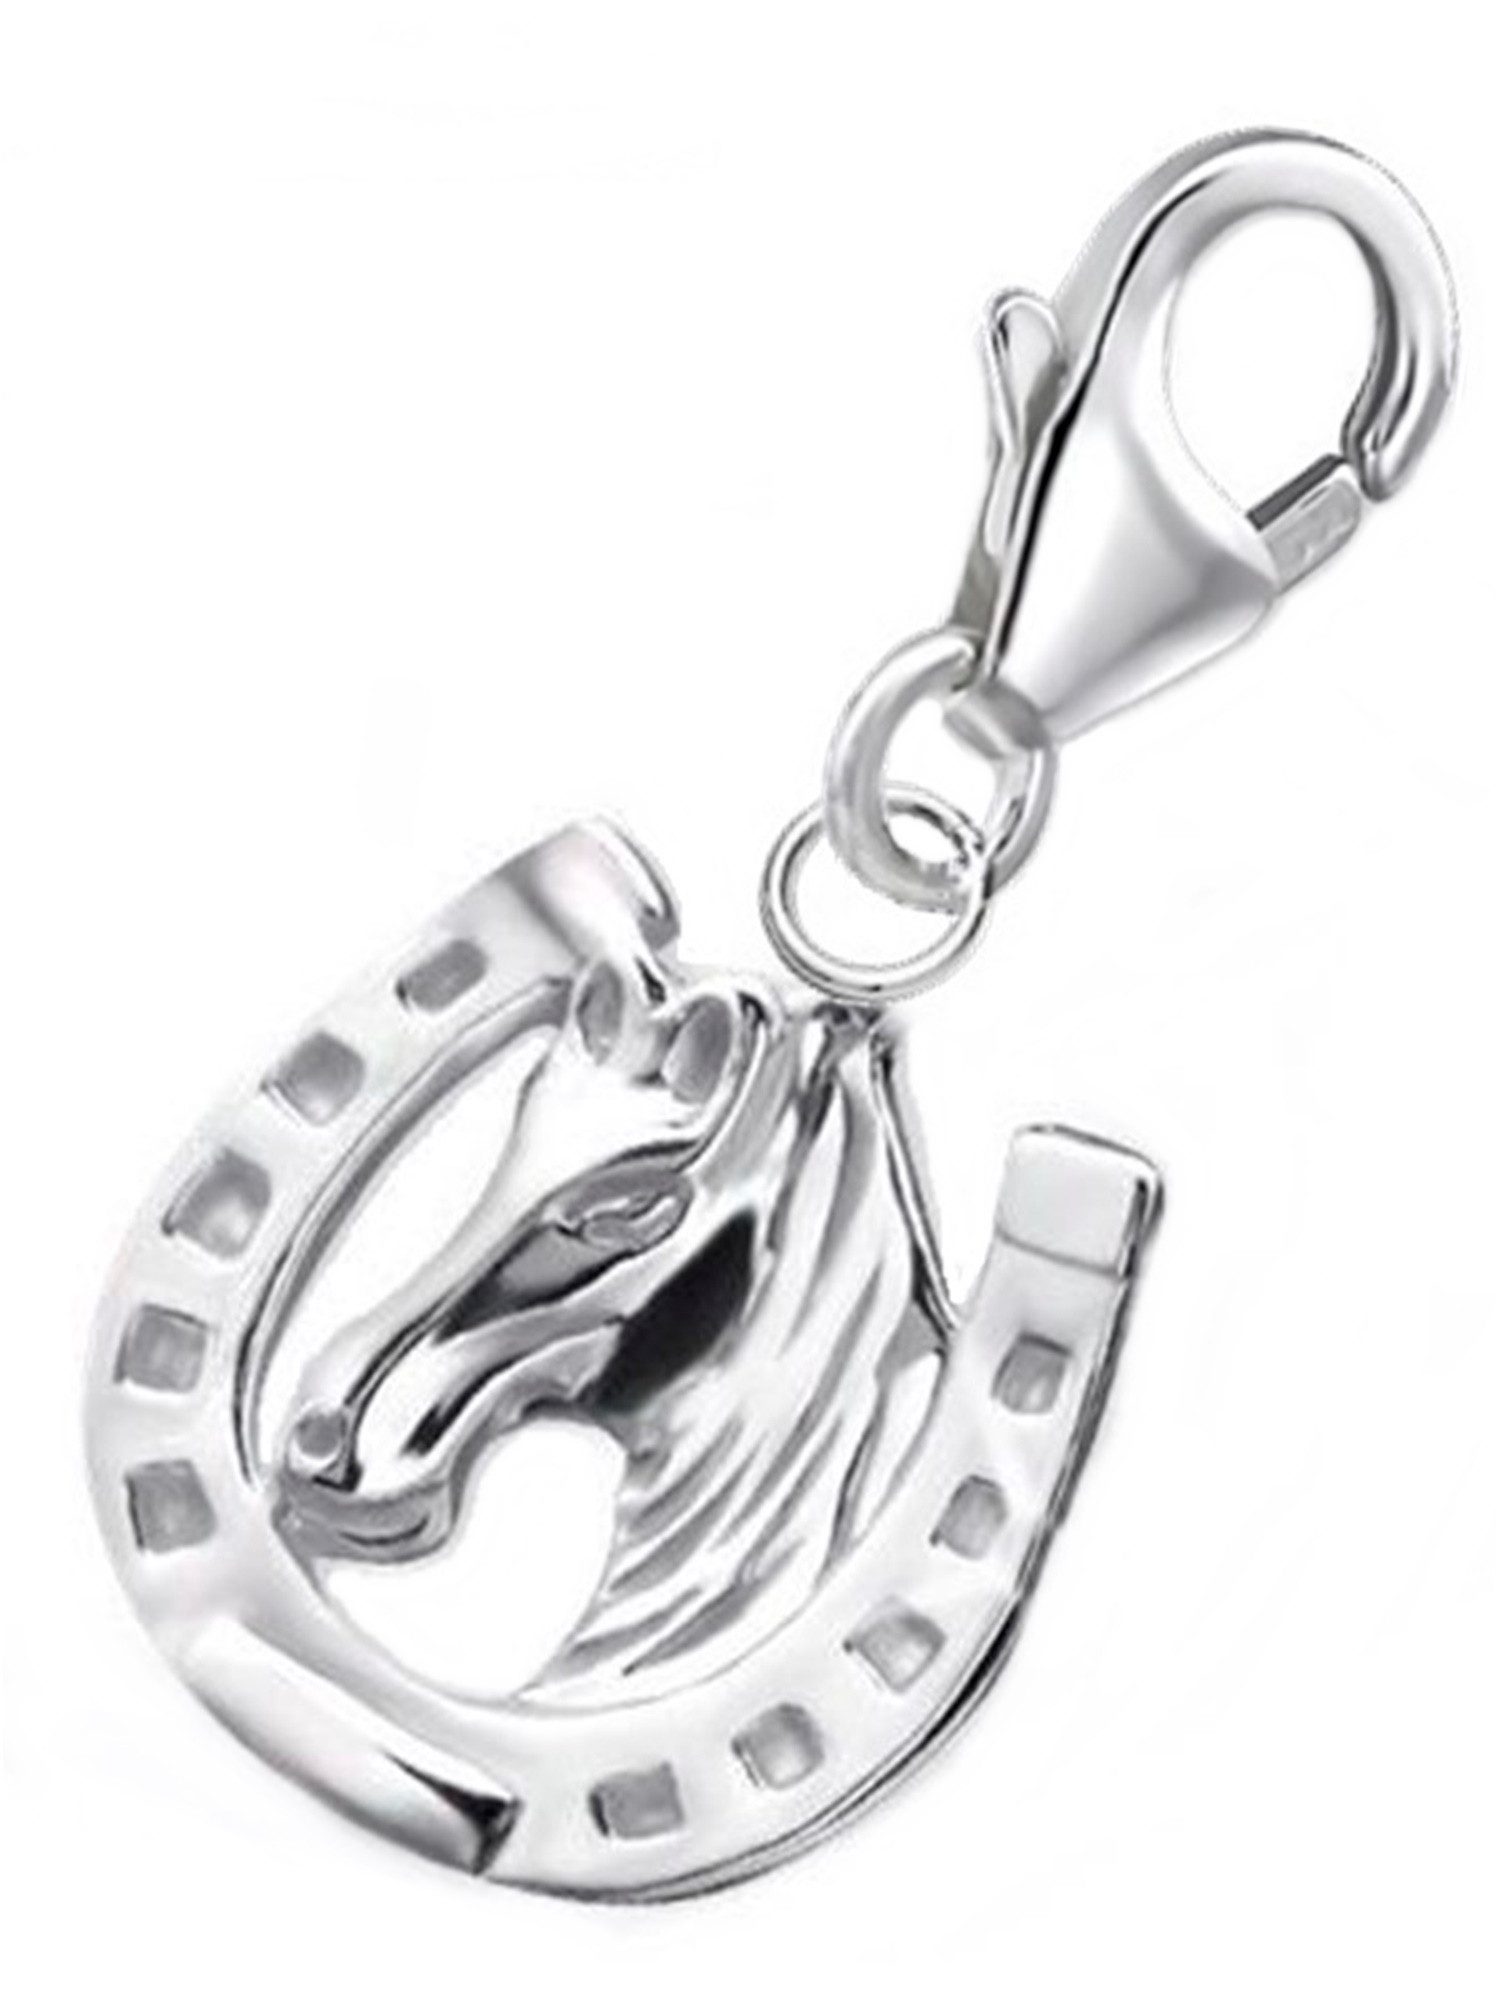 Goldene Hufeisen Charm-Einhänger Karabiner Charm Anhänger für Bettelarmband Hufeisen Pferd 925 Silber (inkl. Etui), für Gliederarmband oder Halskette